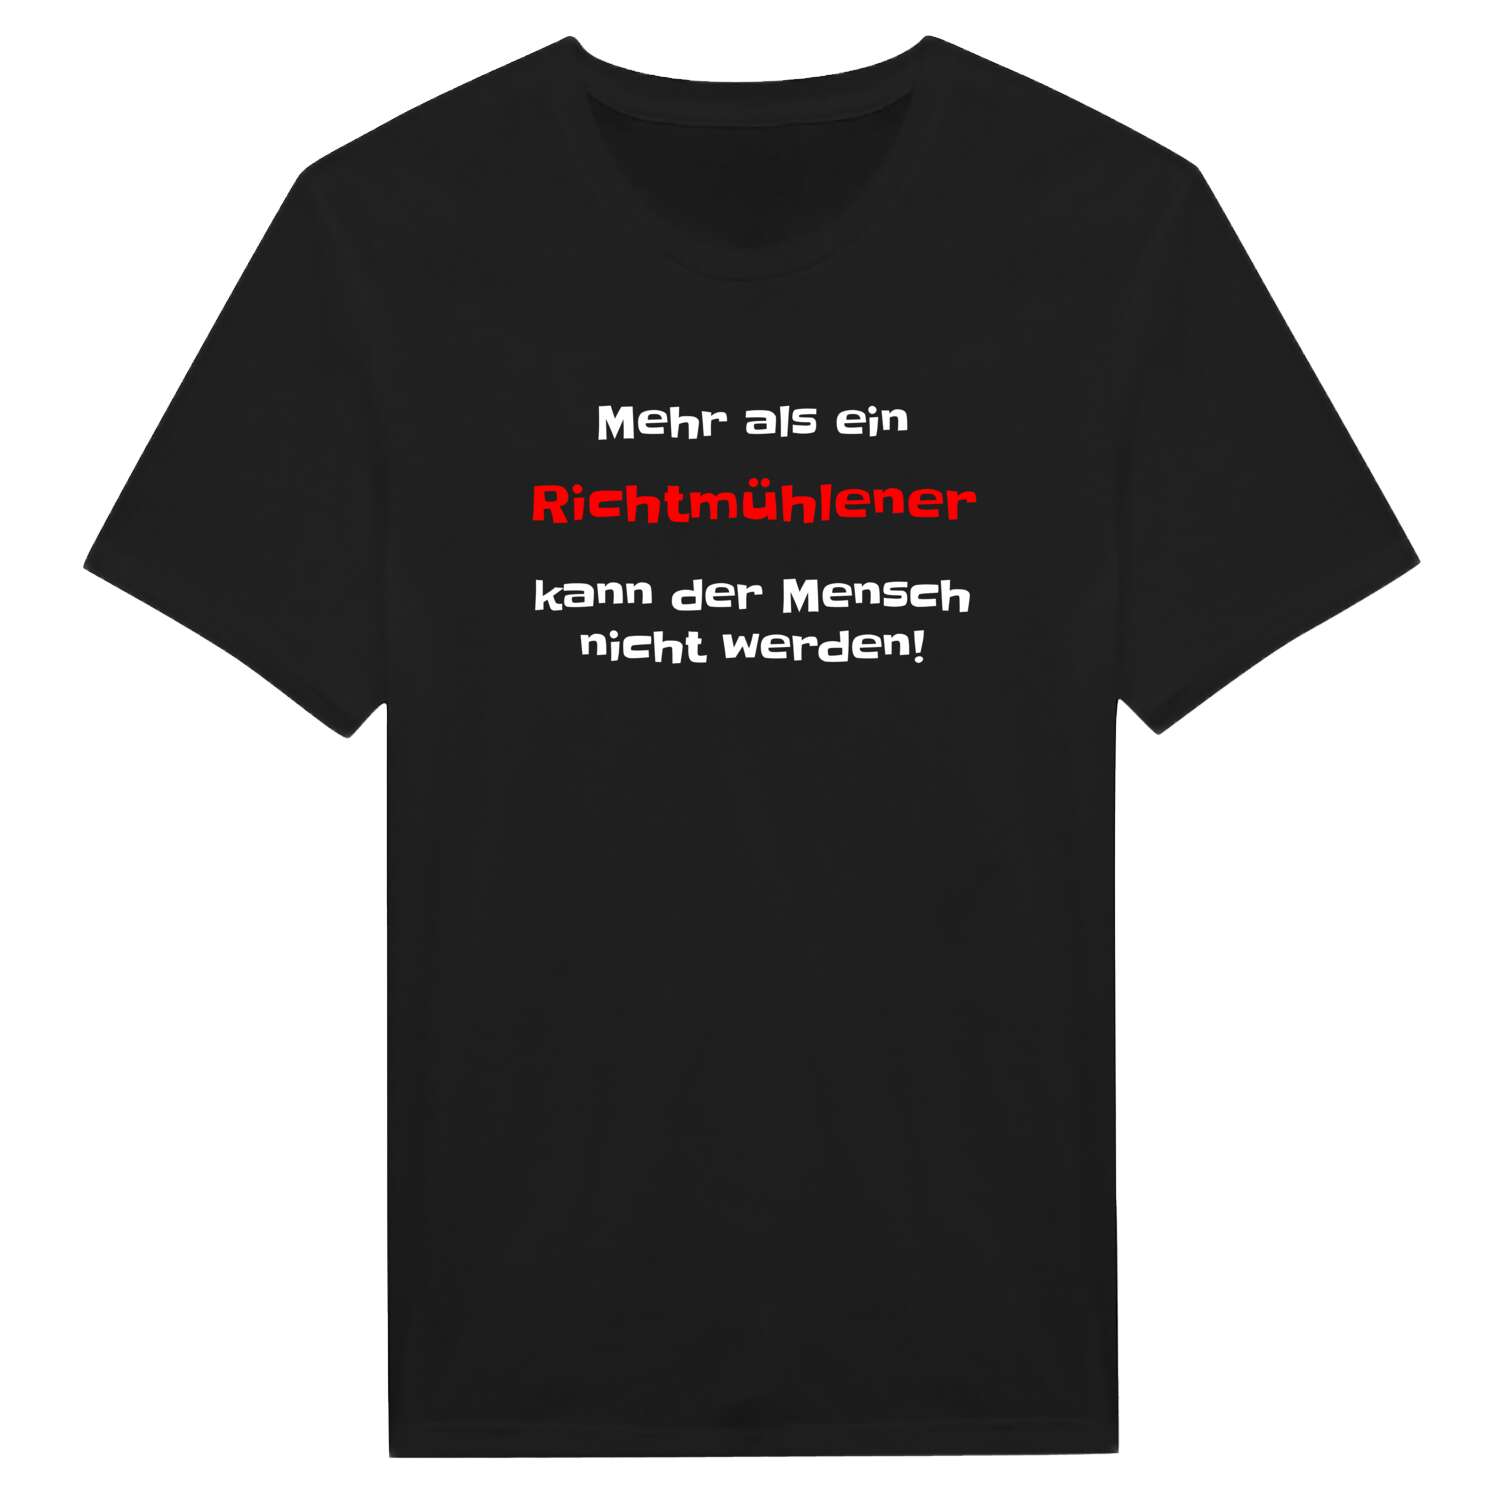 Richtmühle T-Shirt »Mehr als ein«